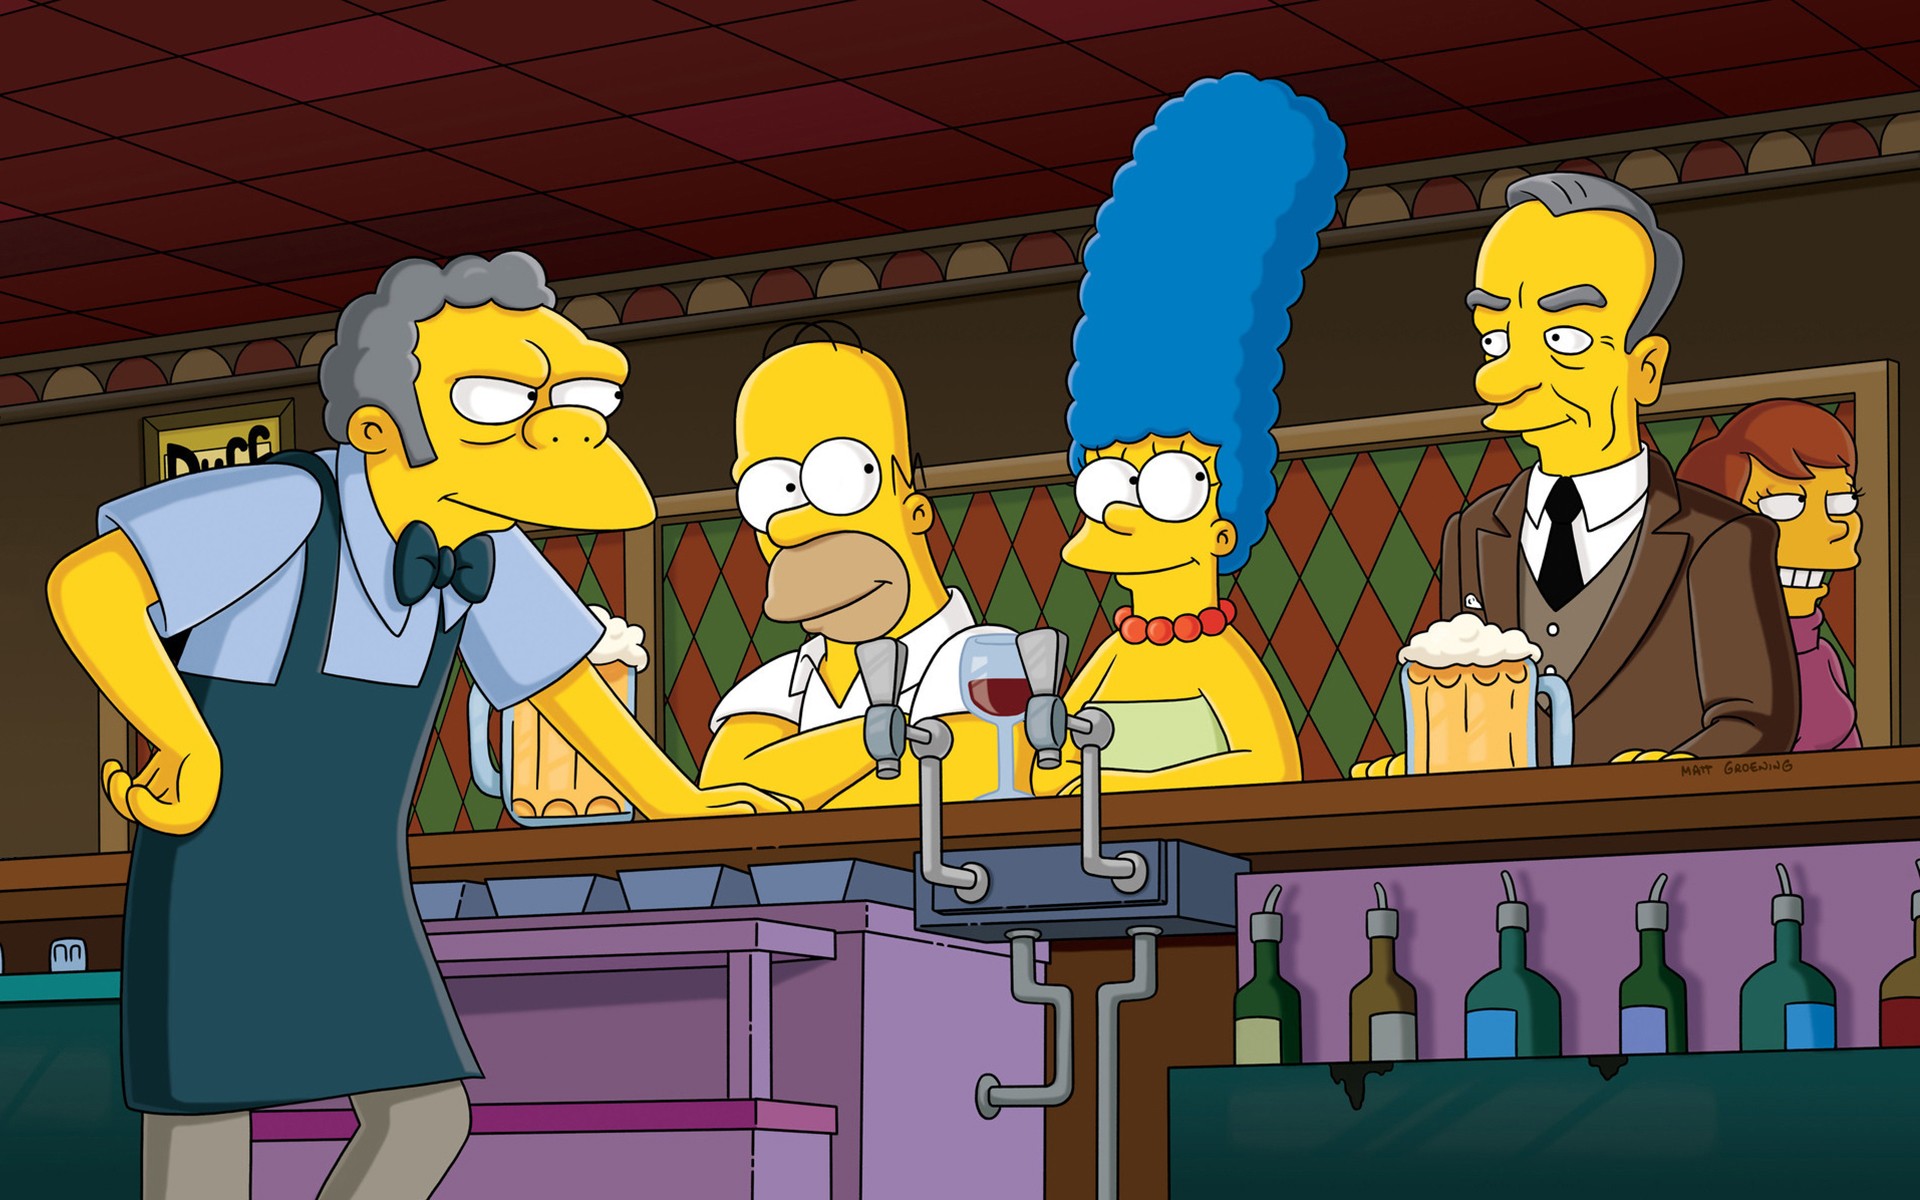 General 1920x1200 The Simpsons Moe Szyslak Marge Simpson Homer Simpson beer bar TV series cartoon beer mugs